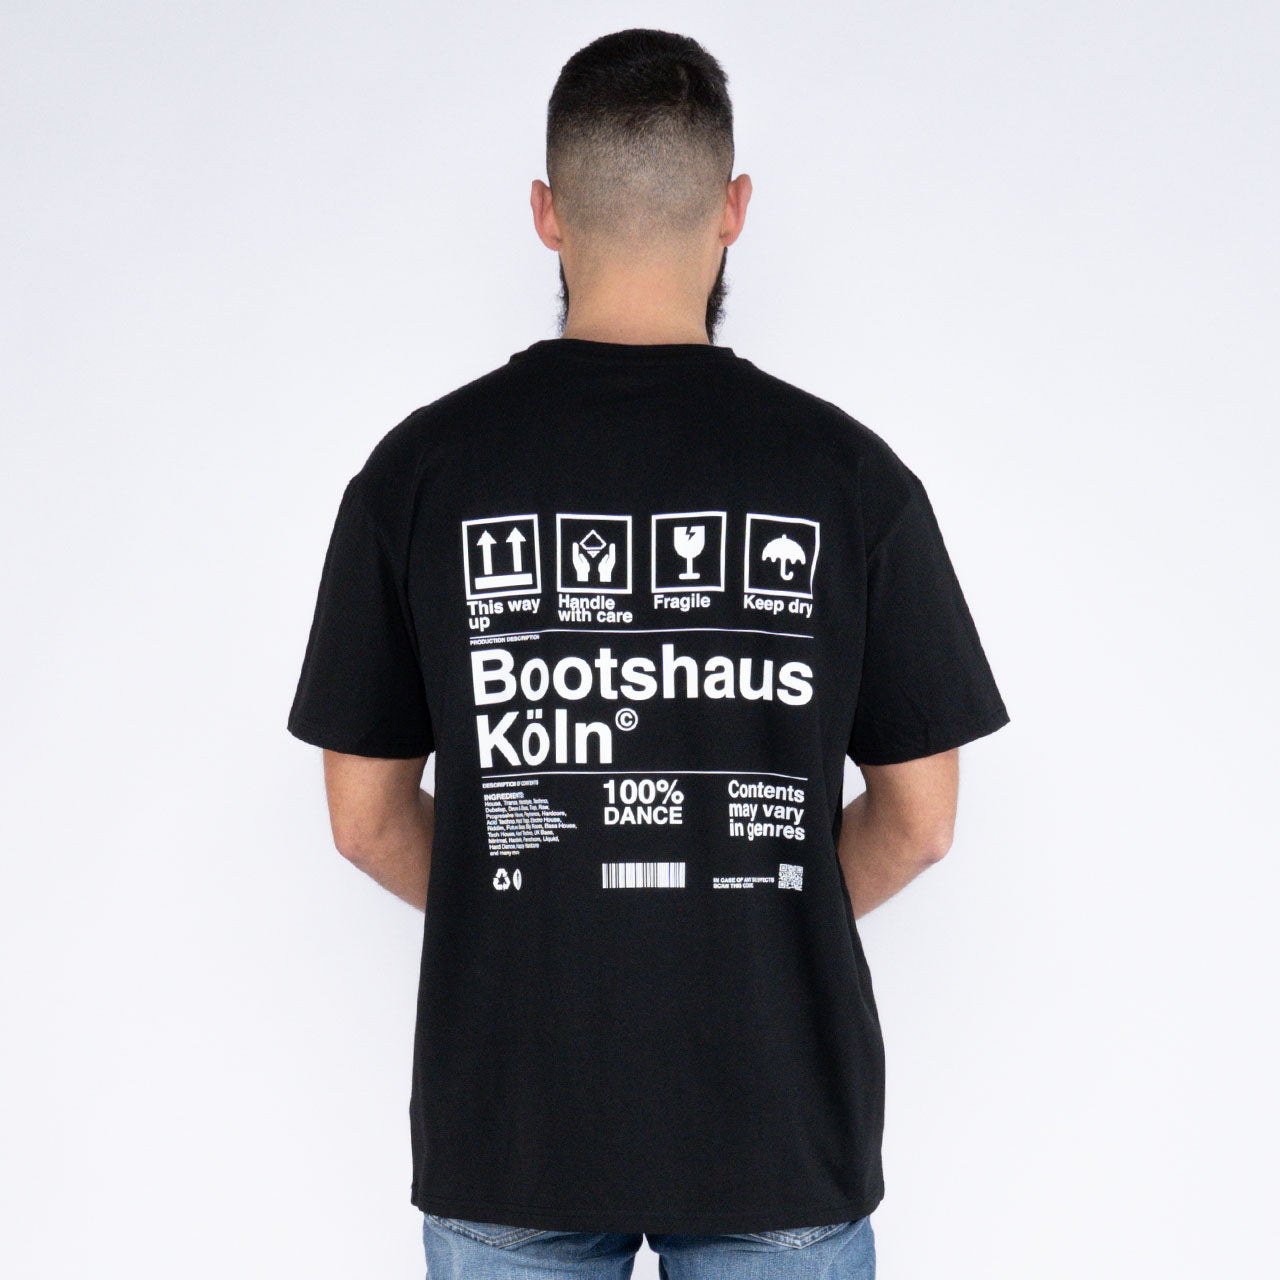 Bootshaus - Unbox Shirt schwarz